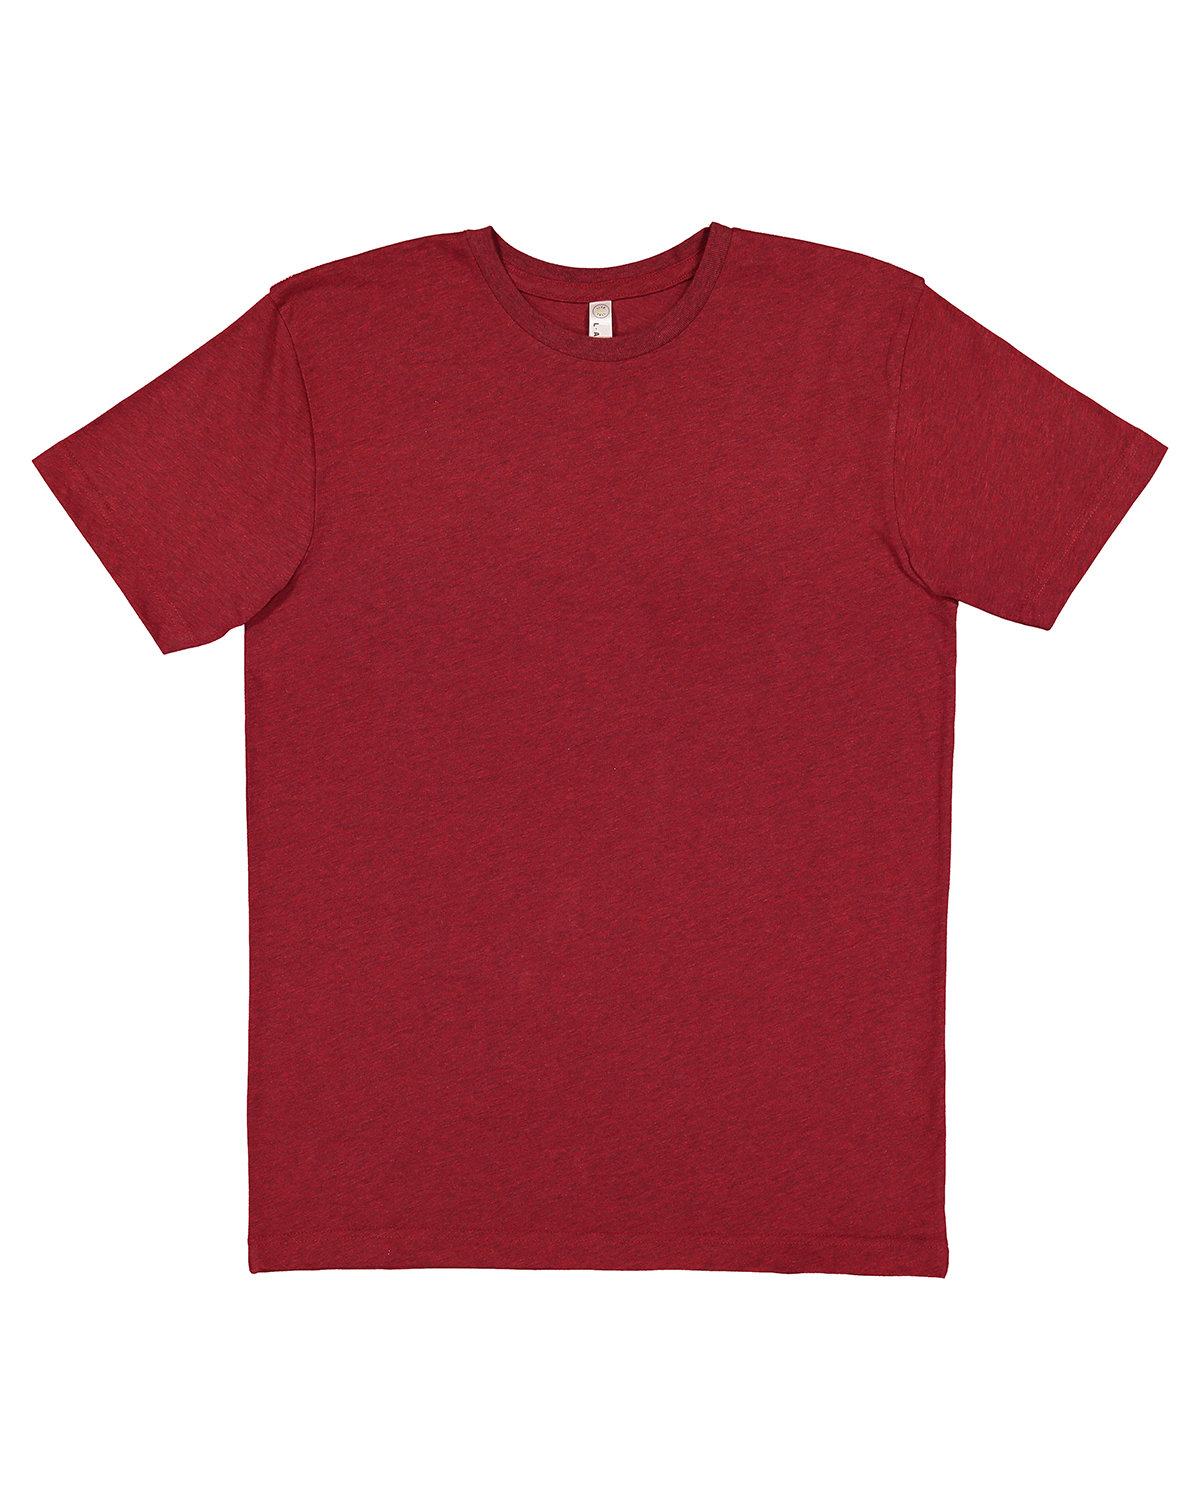 LAT Men's Fine Jersey T-Shirt CARDINAL BLKOUT 